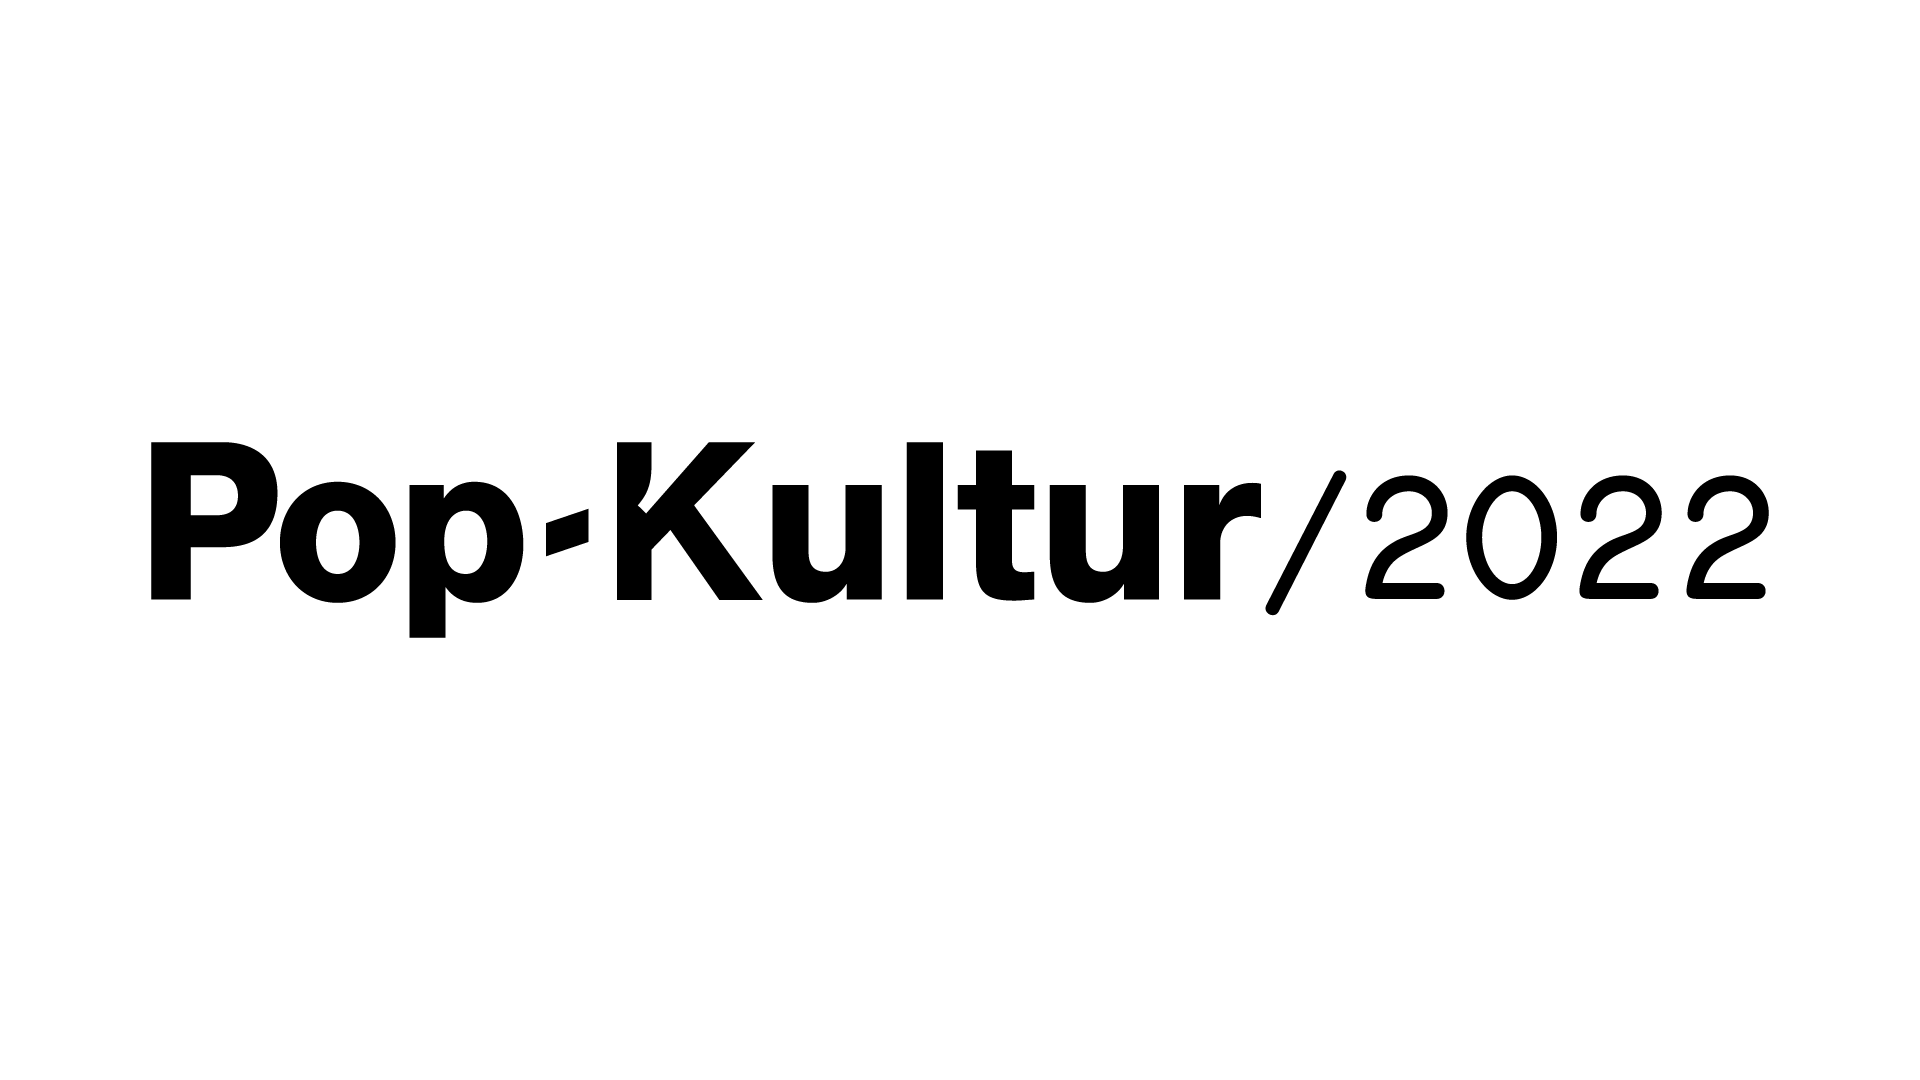 Pop-Kultur 2022 Logo black transparent background